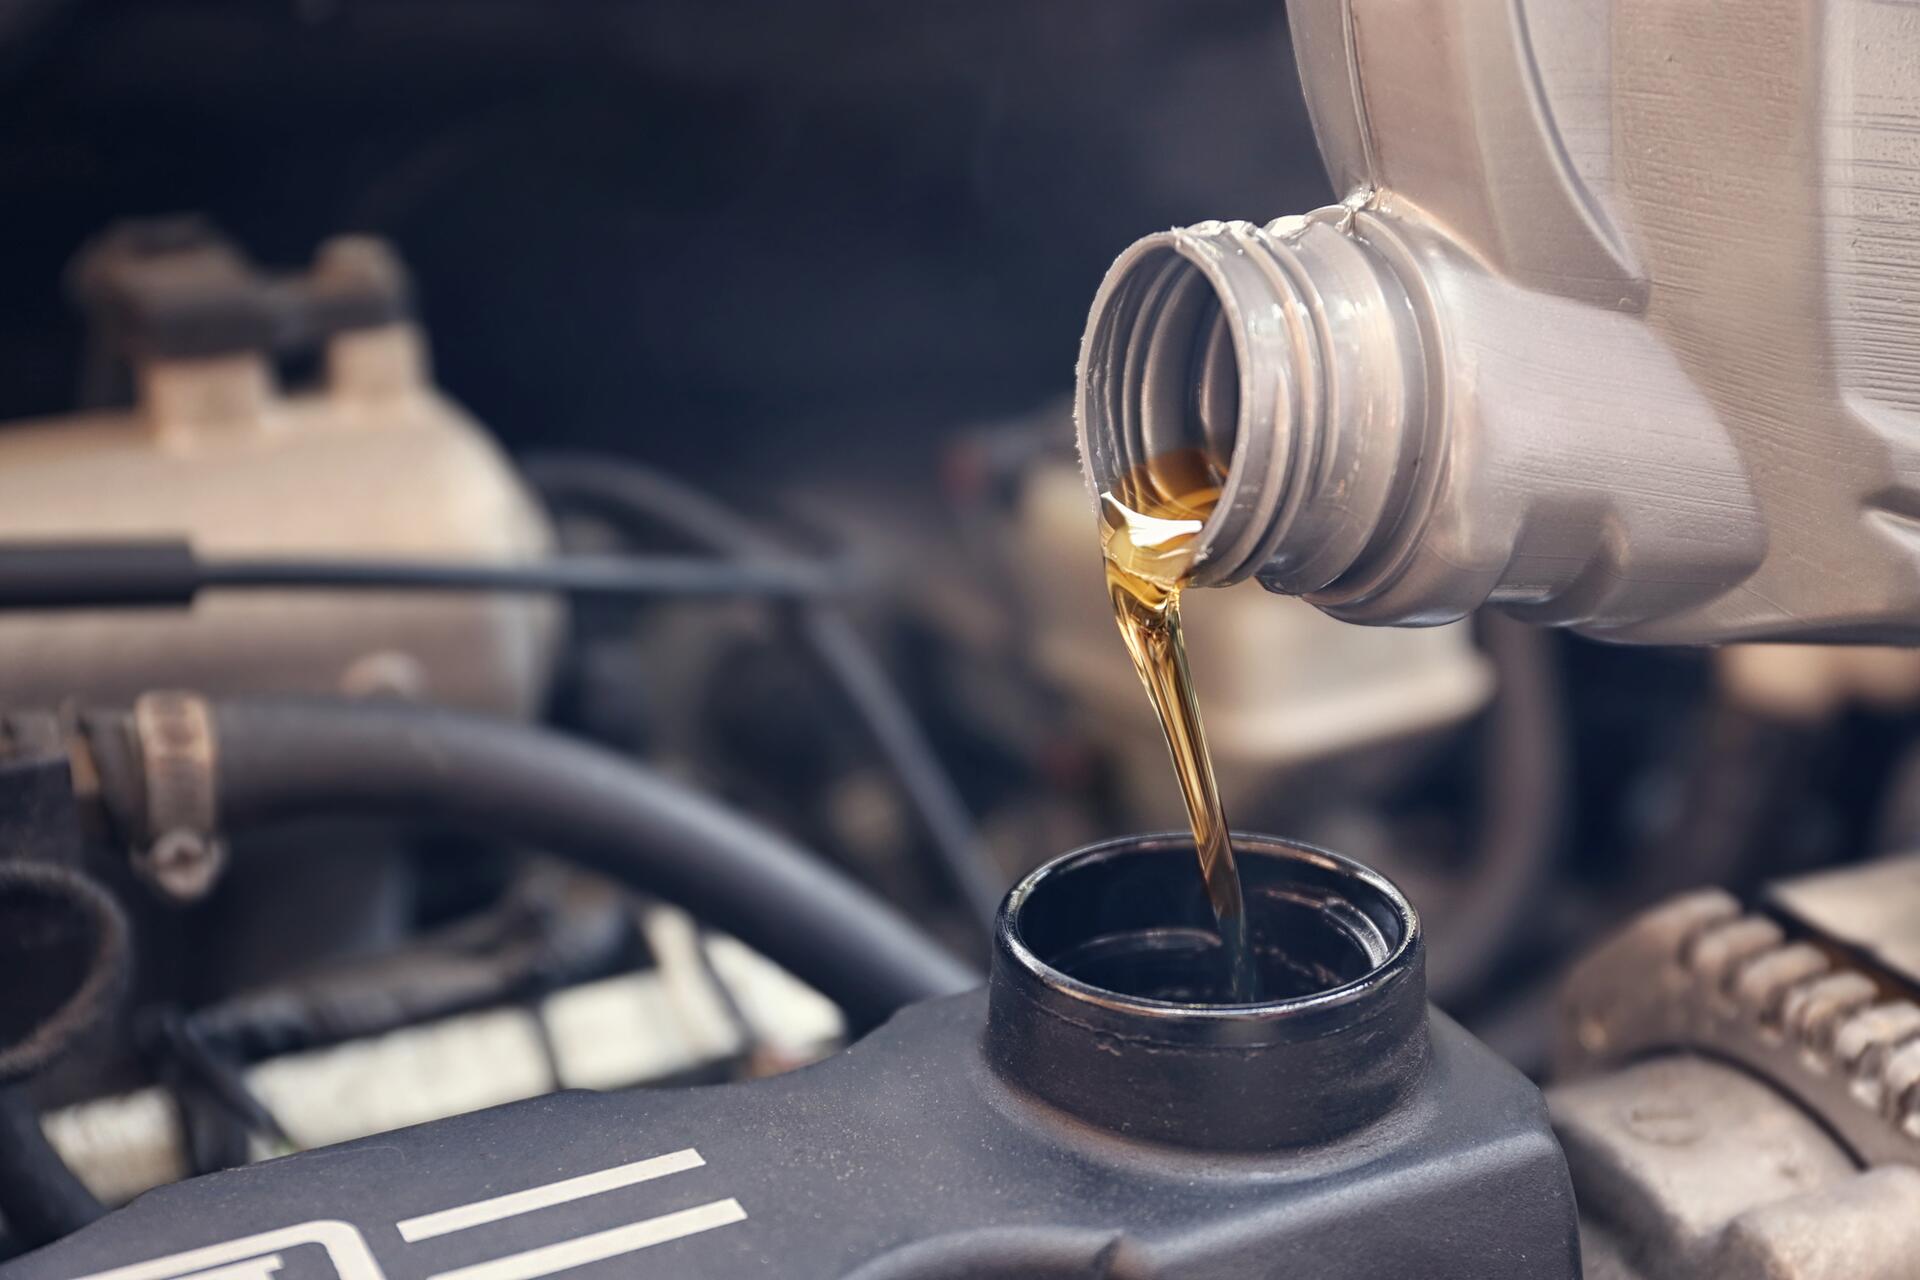 Technický list oleje – víte, co do svého auta lijete? – 2. díl